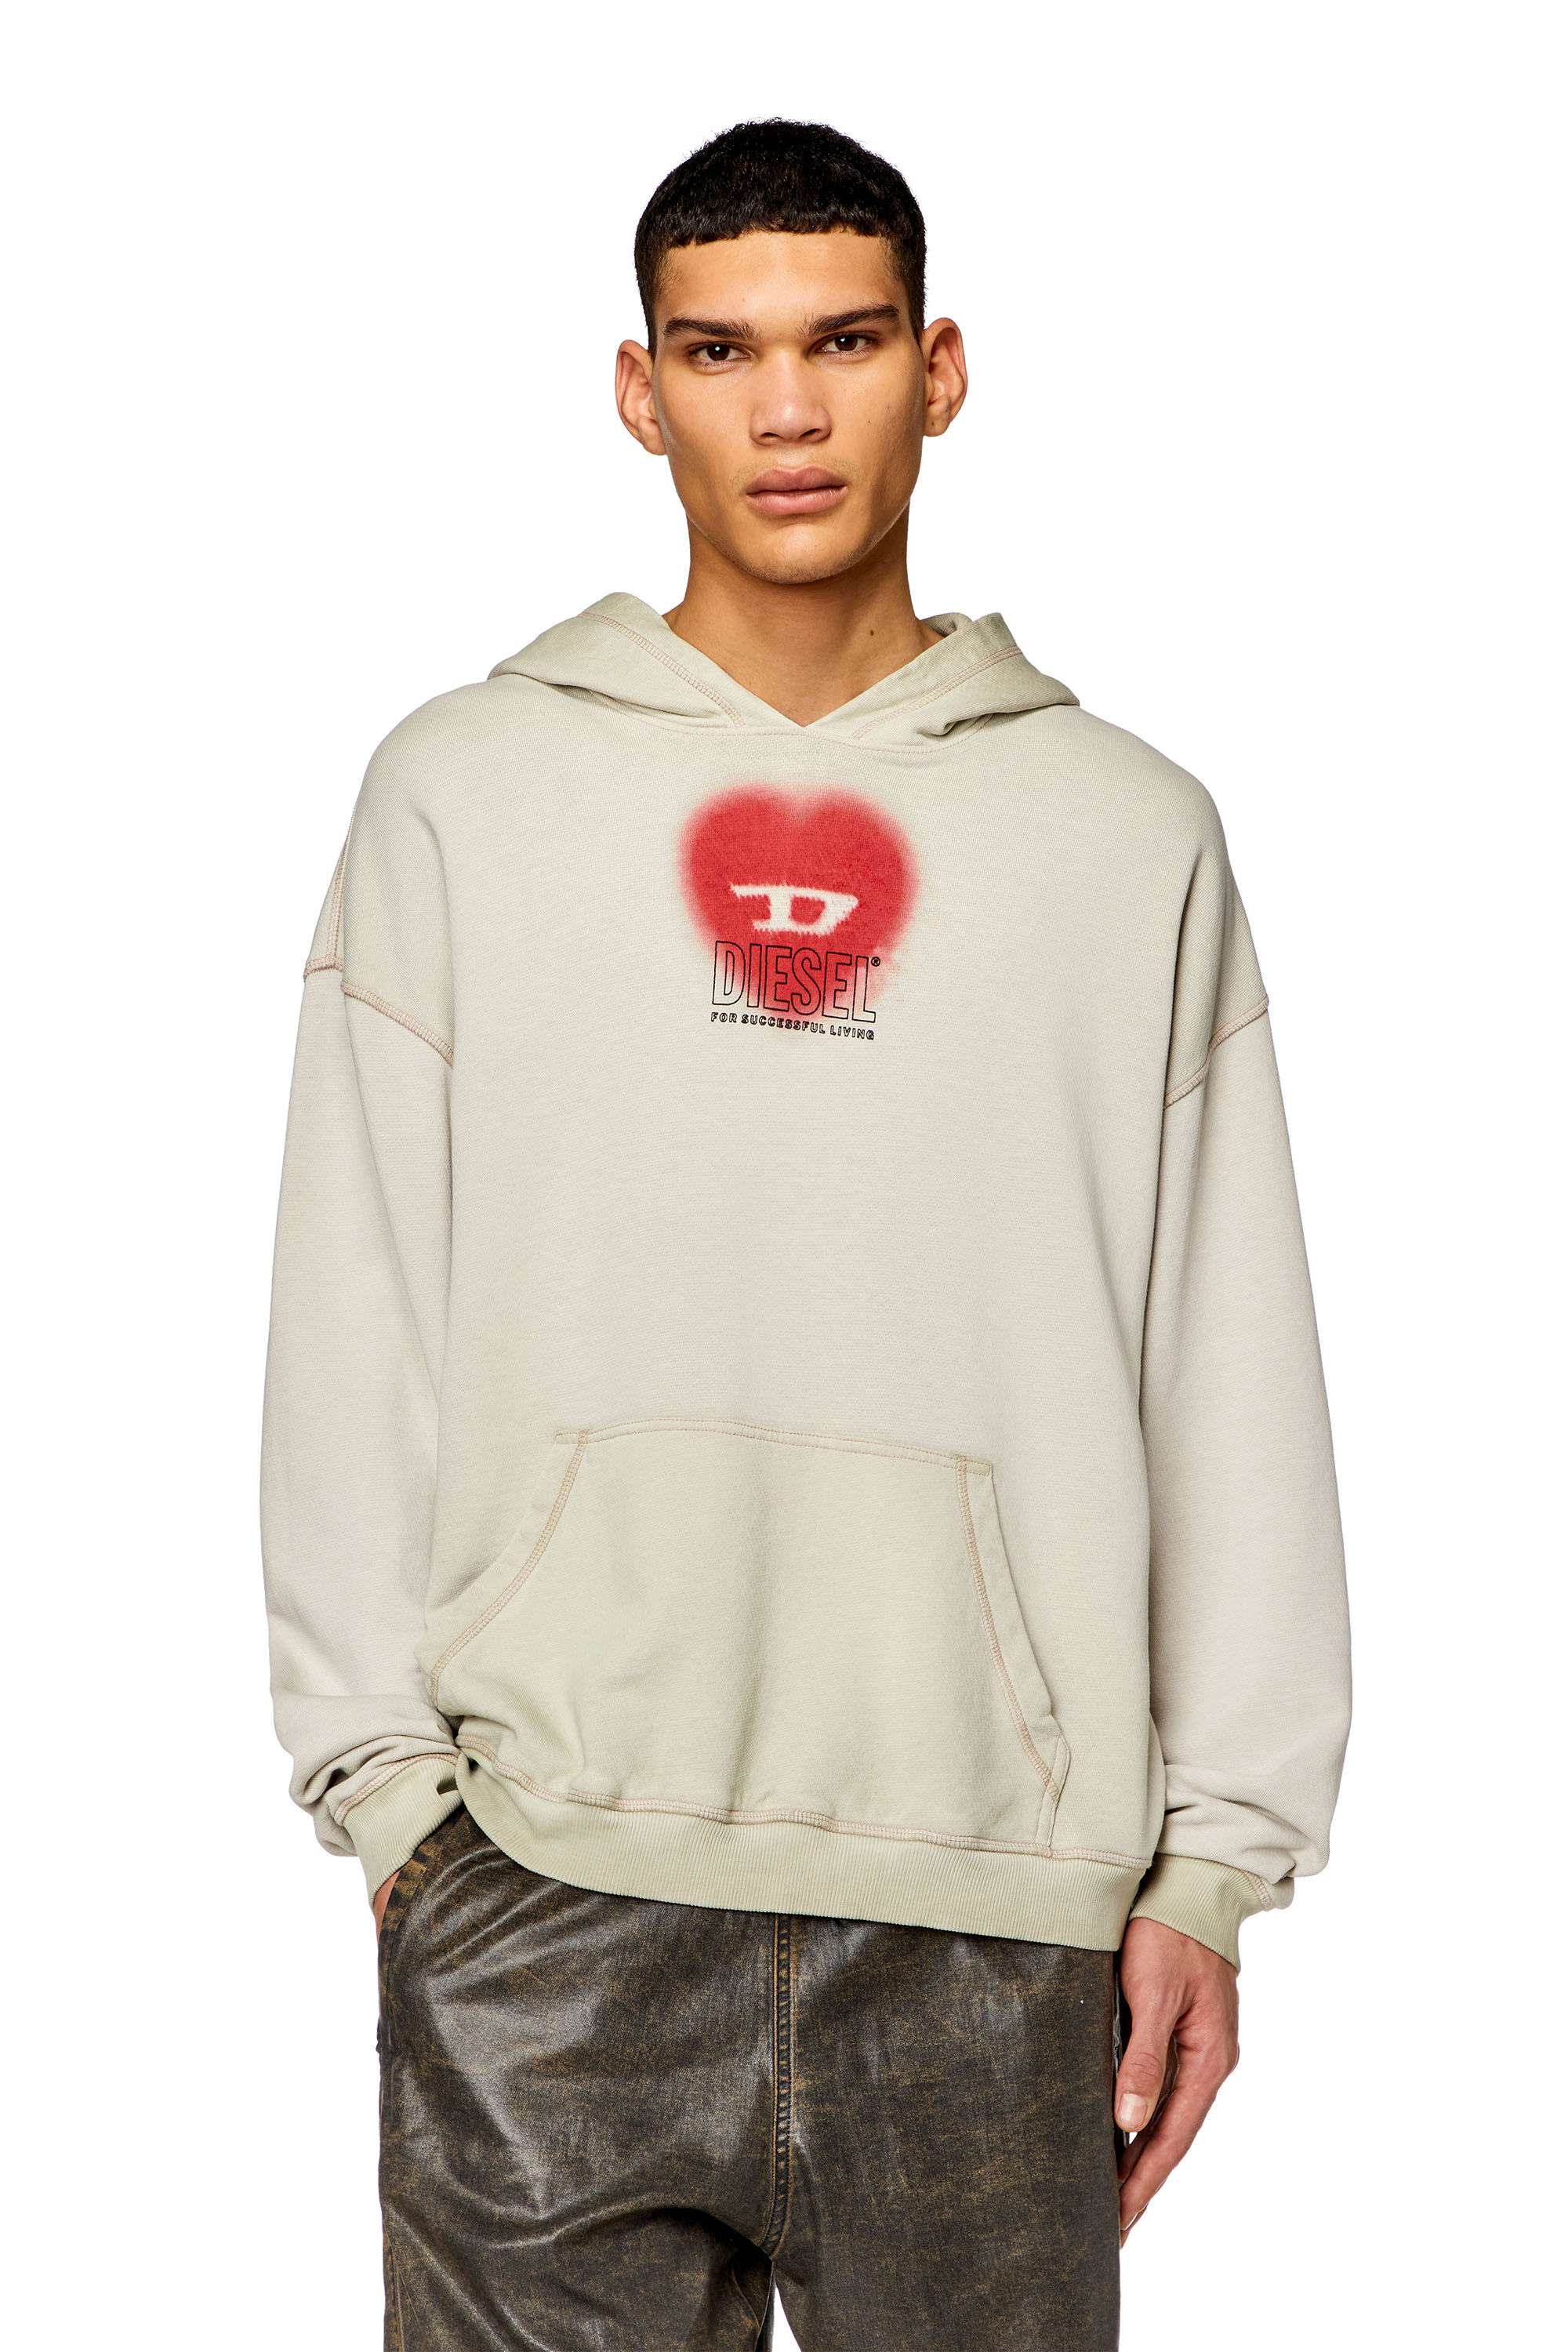 Diesel - S-BOXT-HOOD-N10, Man Faded hoodie with heart print in Beige - Image 3